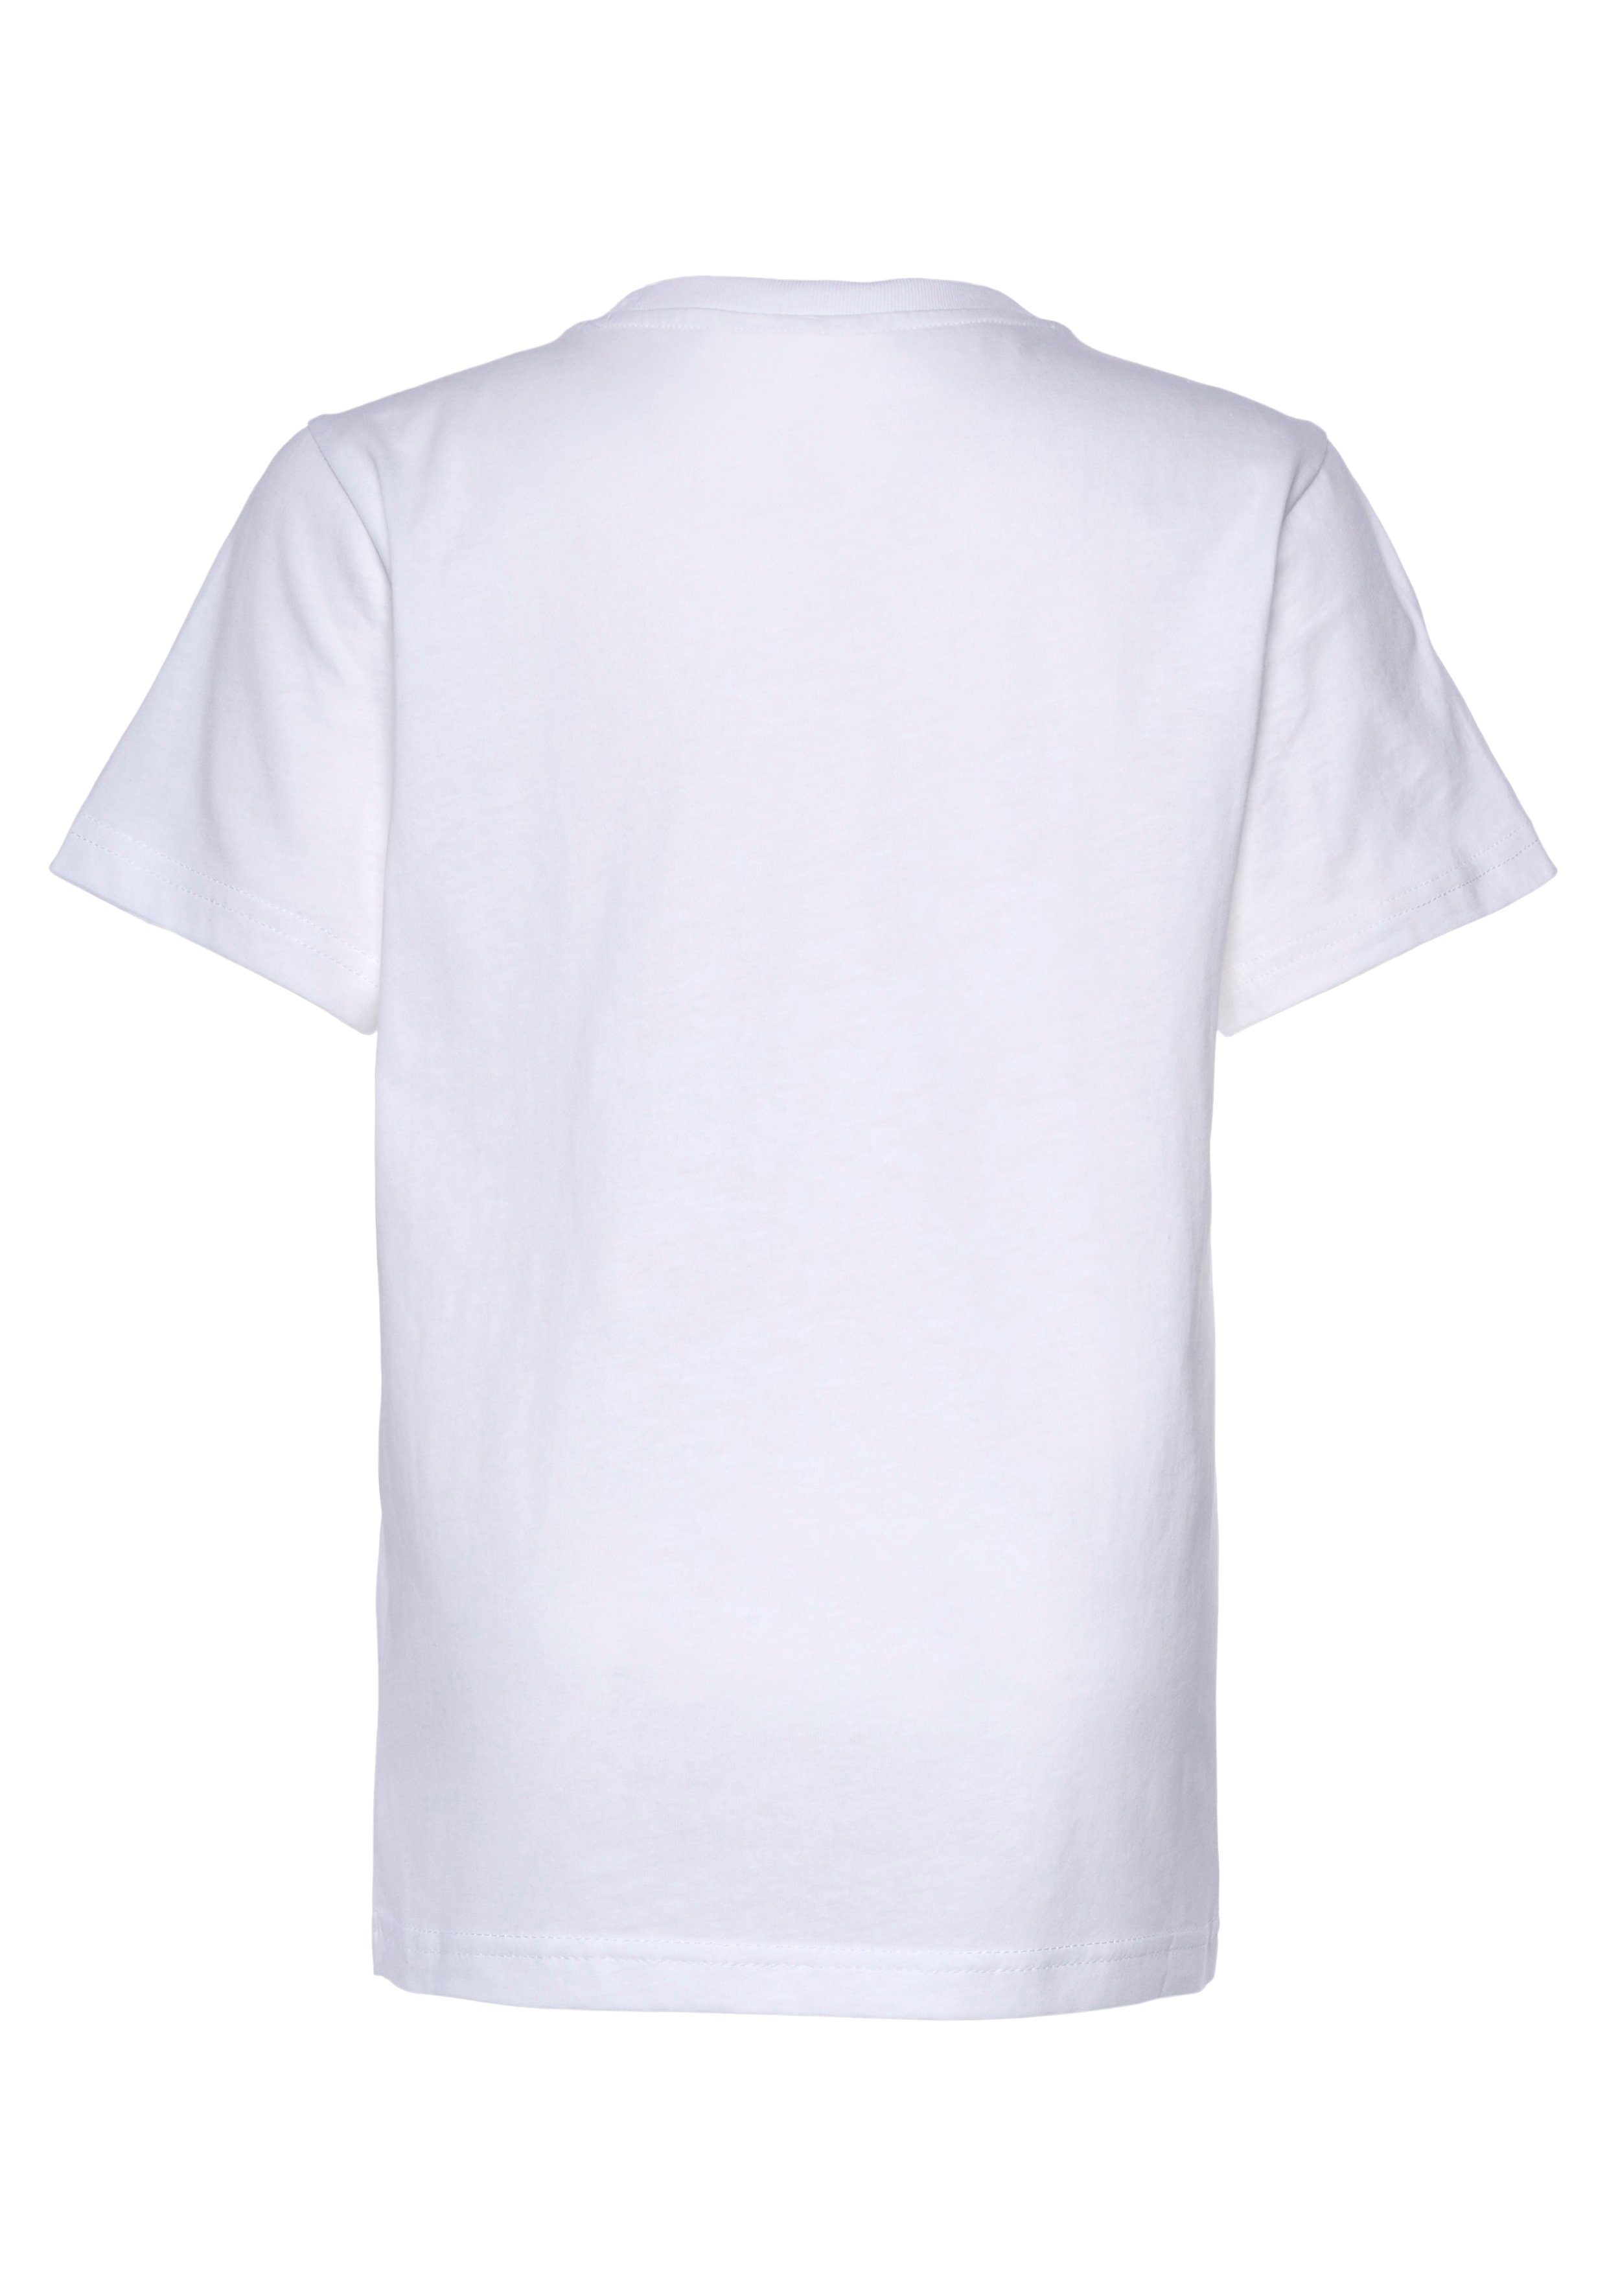 2Pack Champion schwarz-weiß T-Shirt Kinder Crewneck für T-Shirt -